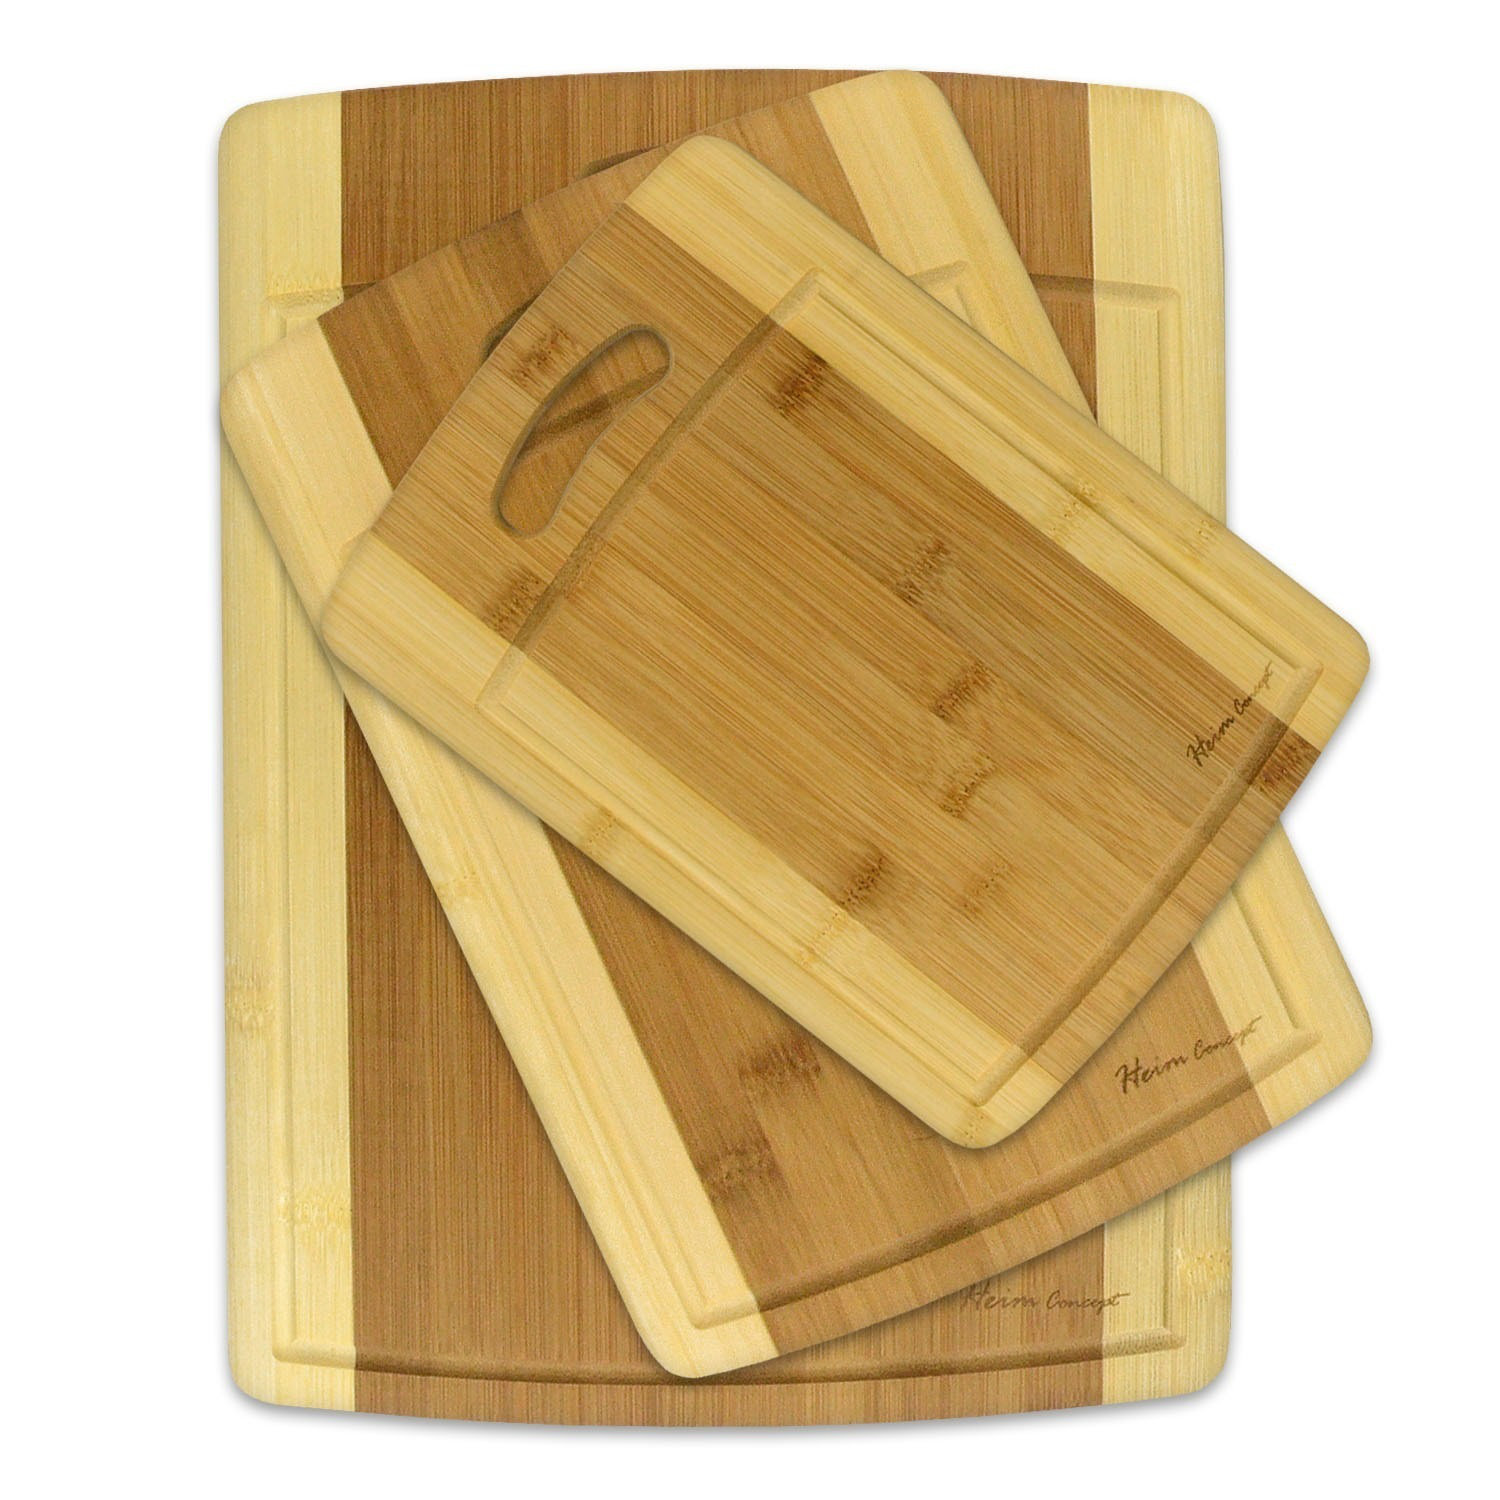 https://assets.wfcdn.com/im/19609485/compr-r85/2205/220593299/farlough-3-piece-bamboo-cutting-board-set.jpg